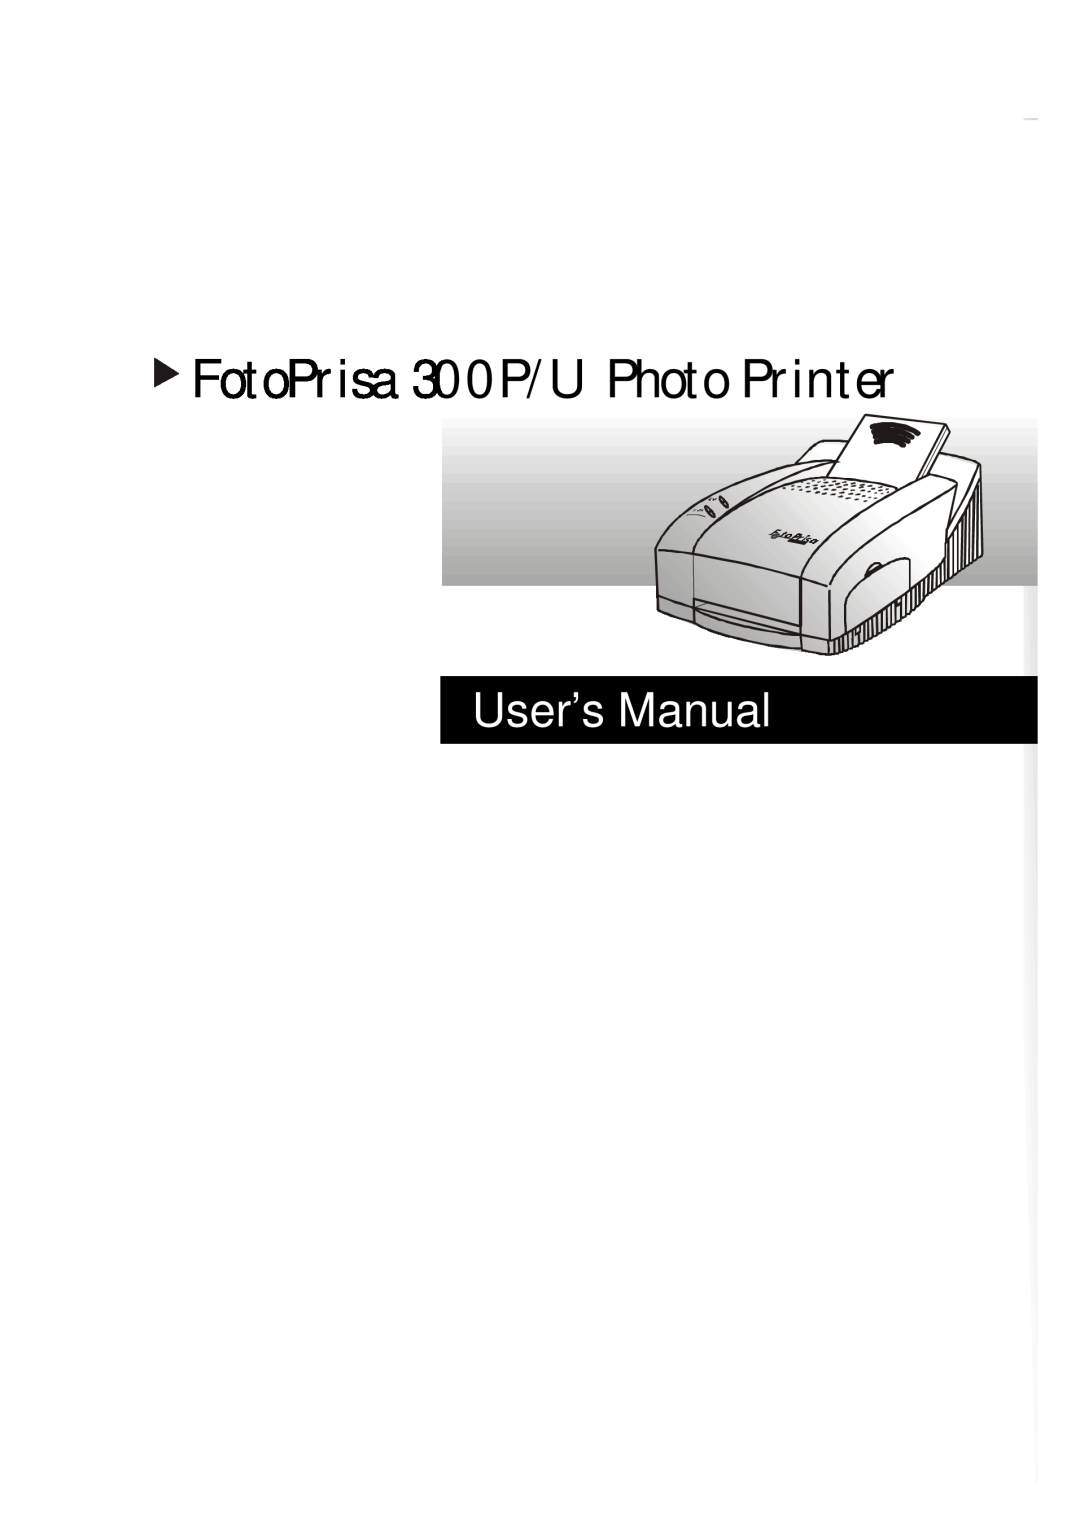 Acer user manual FotoPrisa 300P/U Photo Printer, User’s Manual 